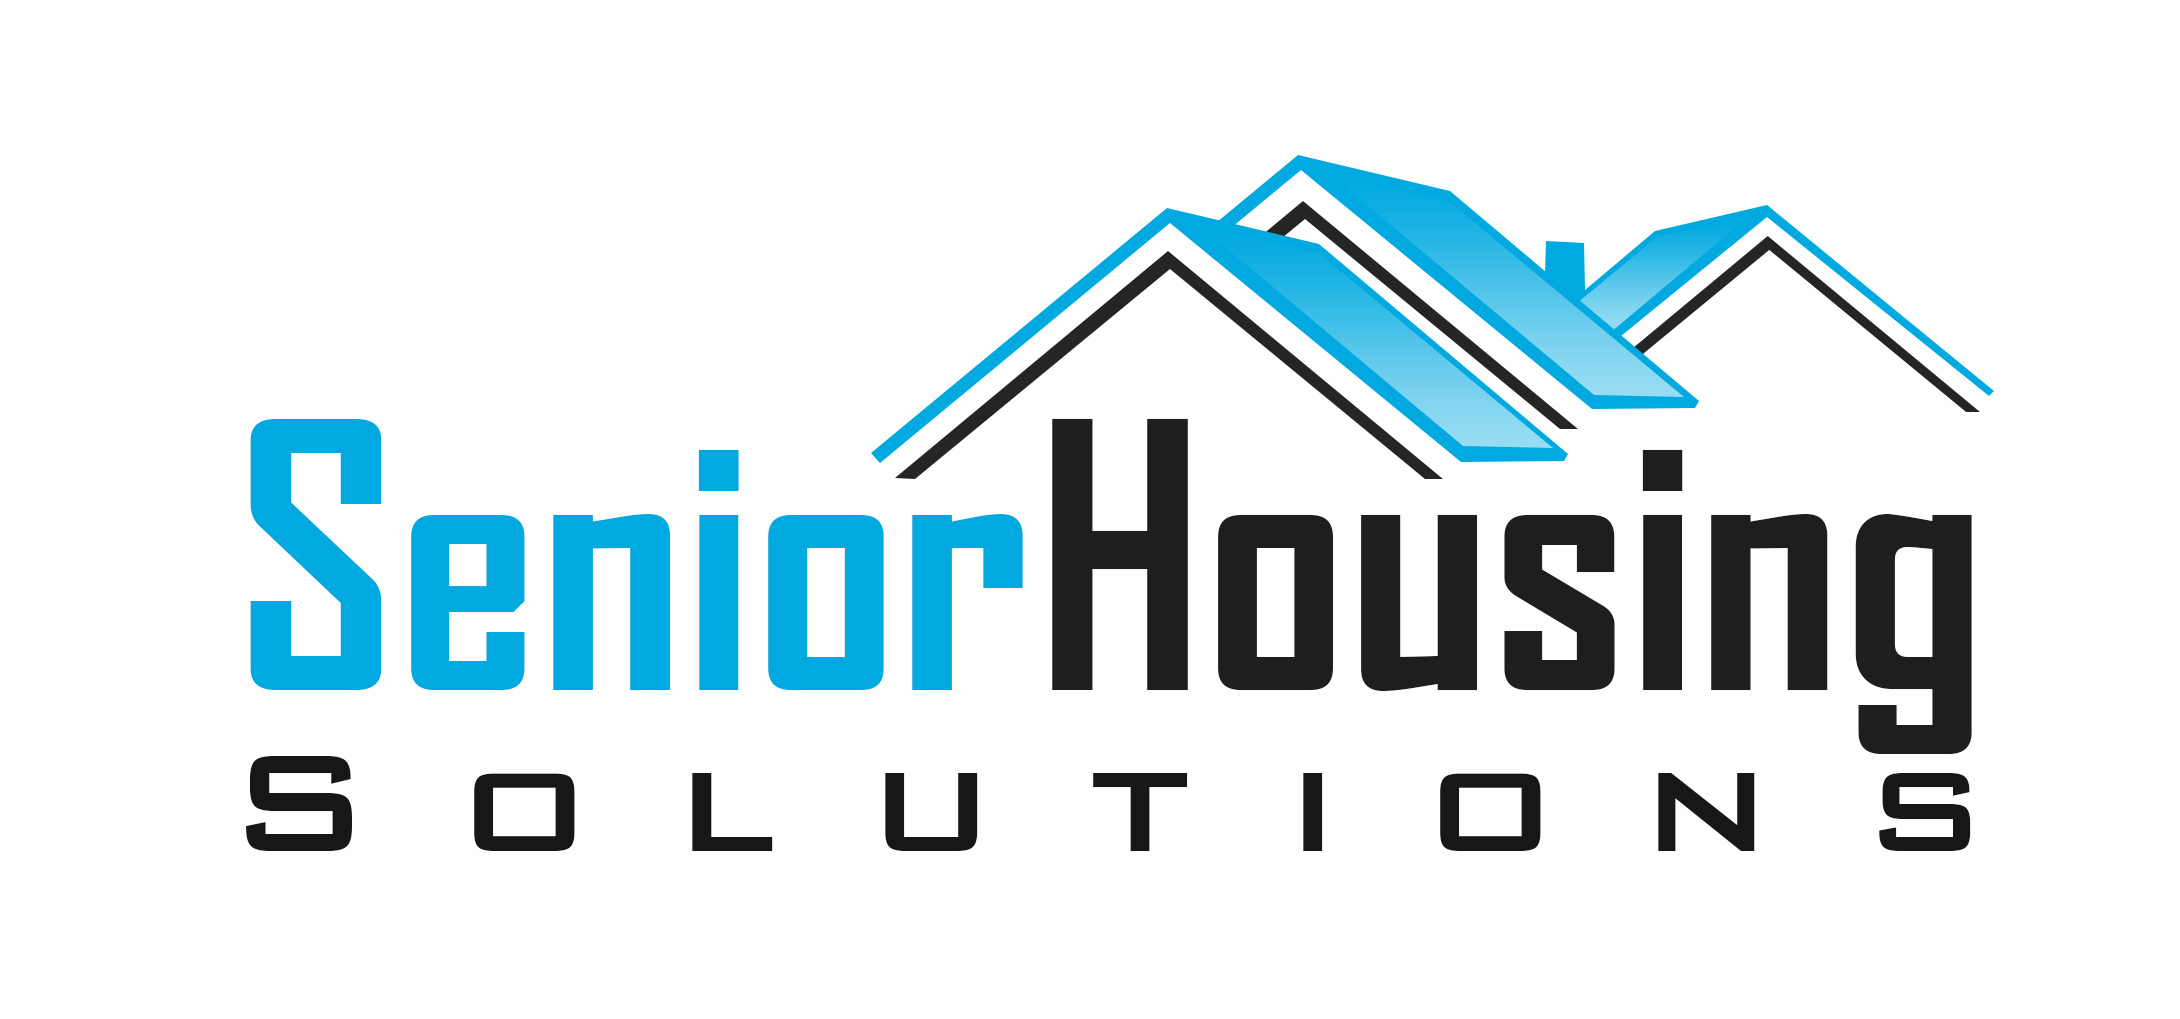 senior housing solutions logo1